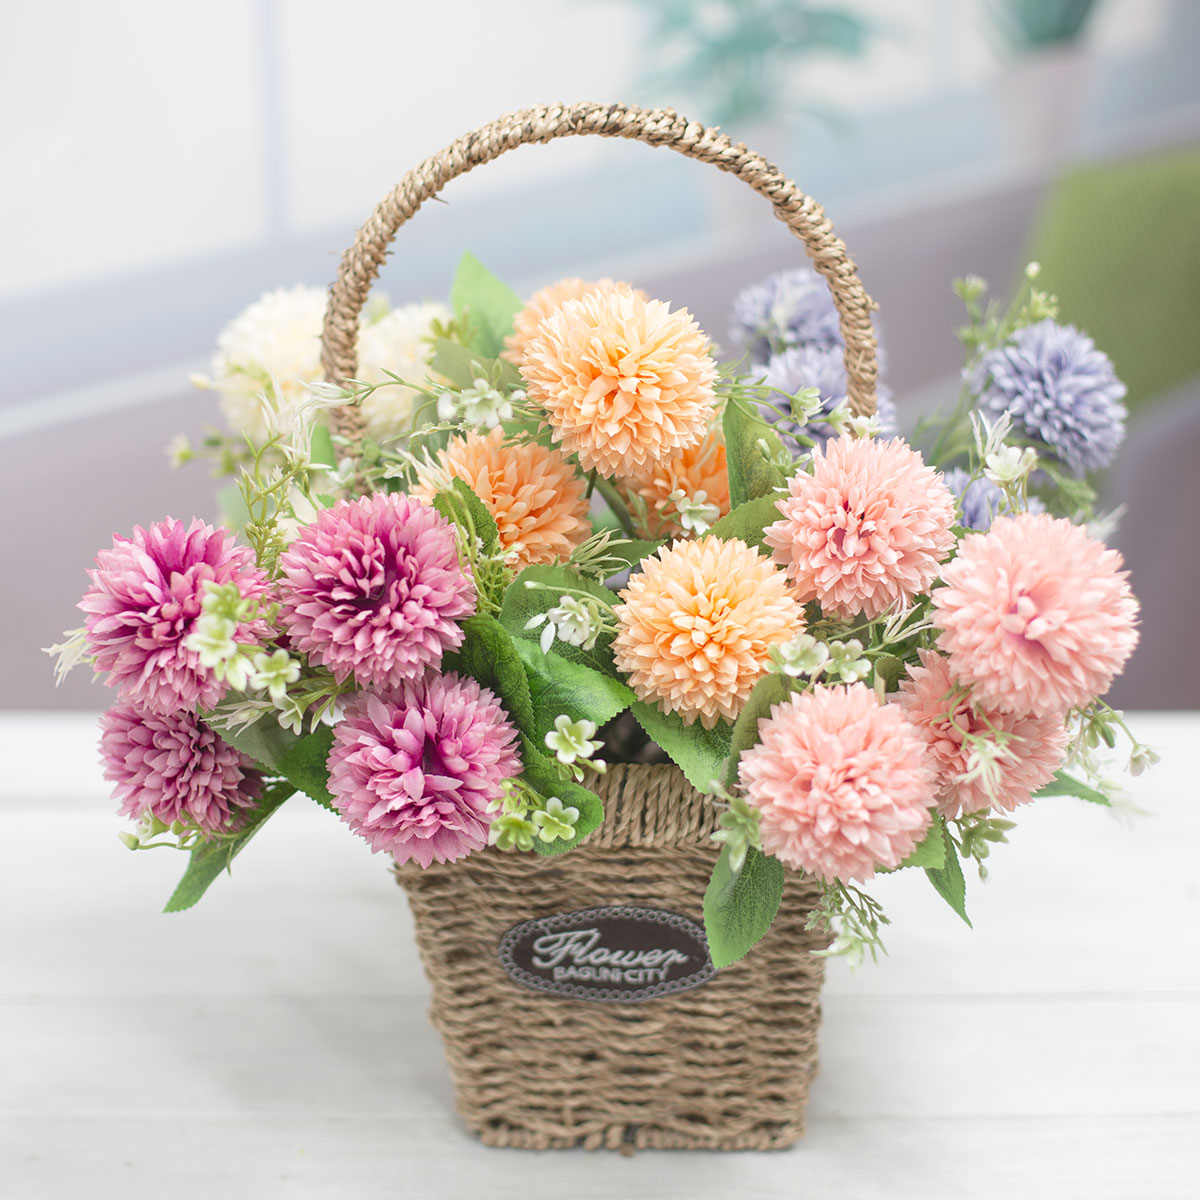 실크플라워 폼폼 소국 꽃 다섯송이 부쉬 바구니에 색상별 하나씩 담은 사진